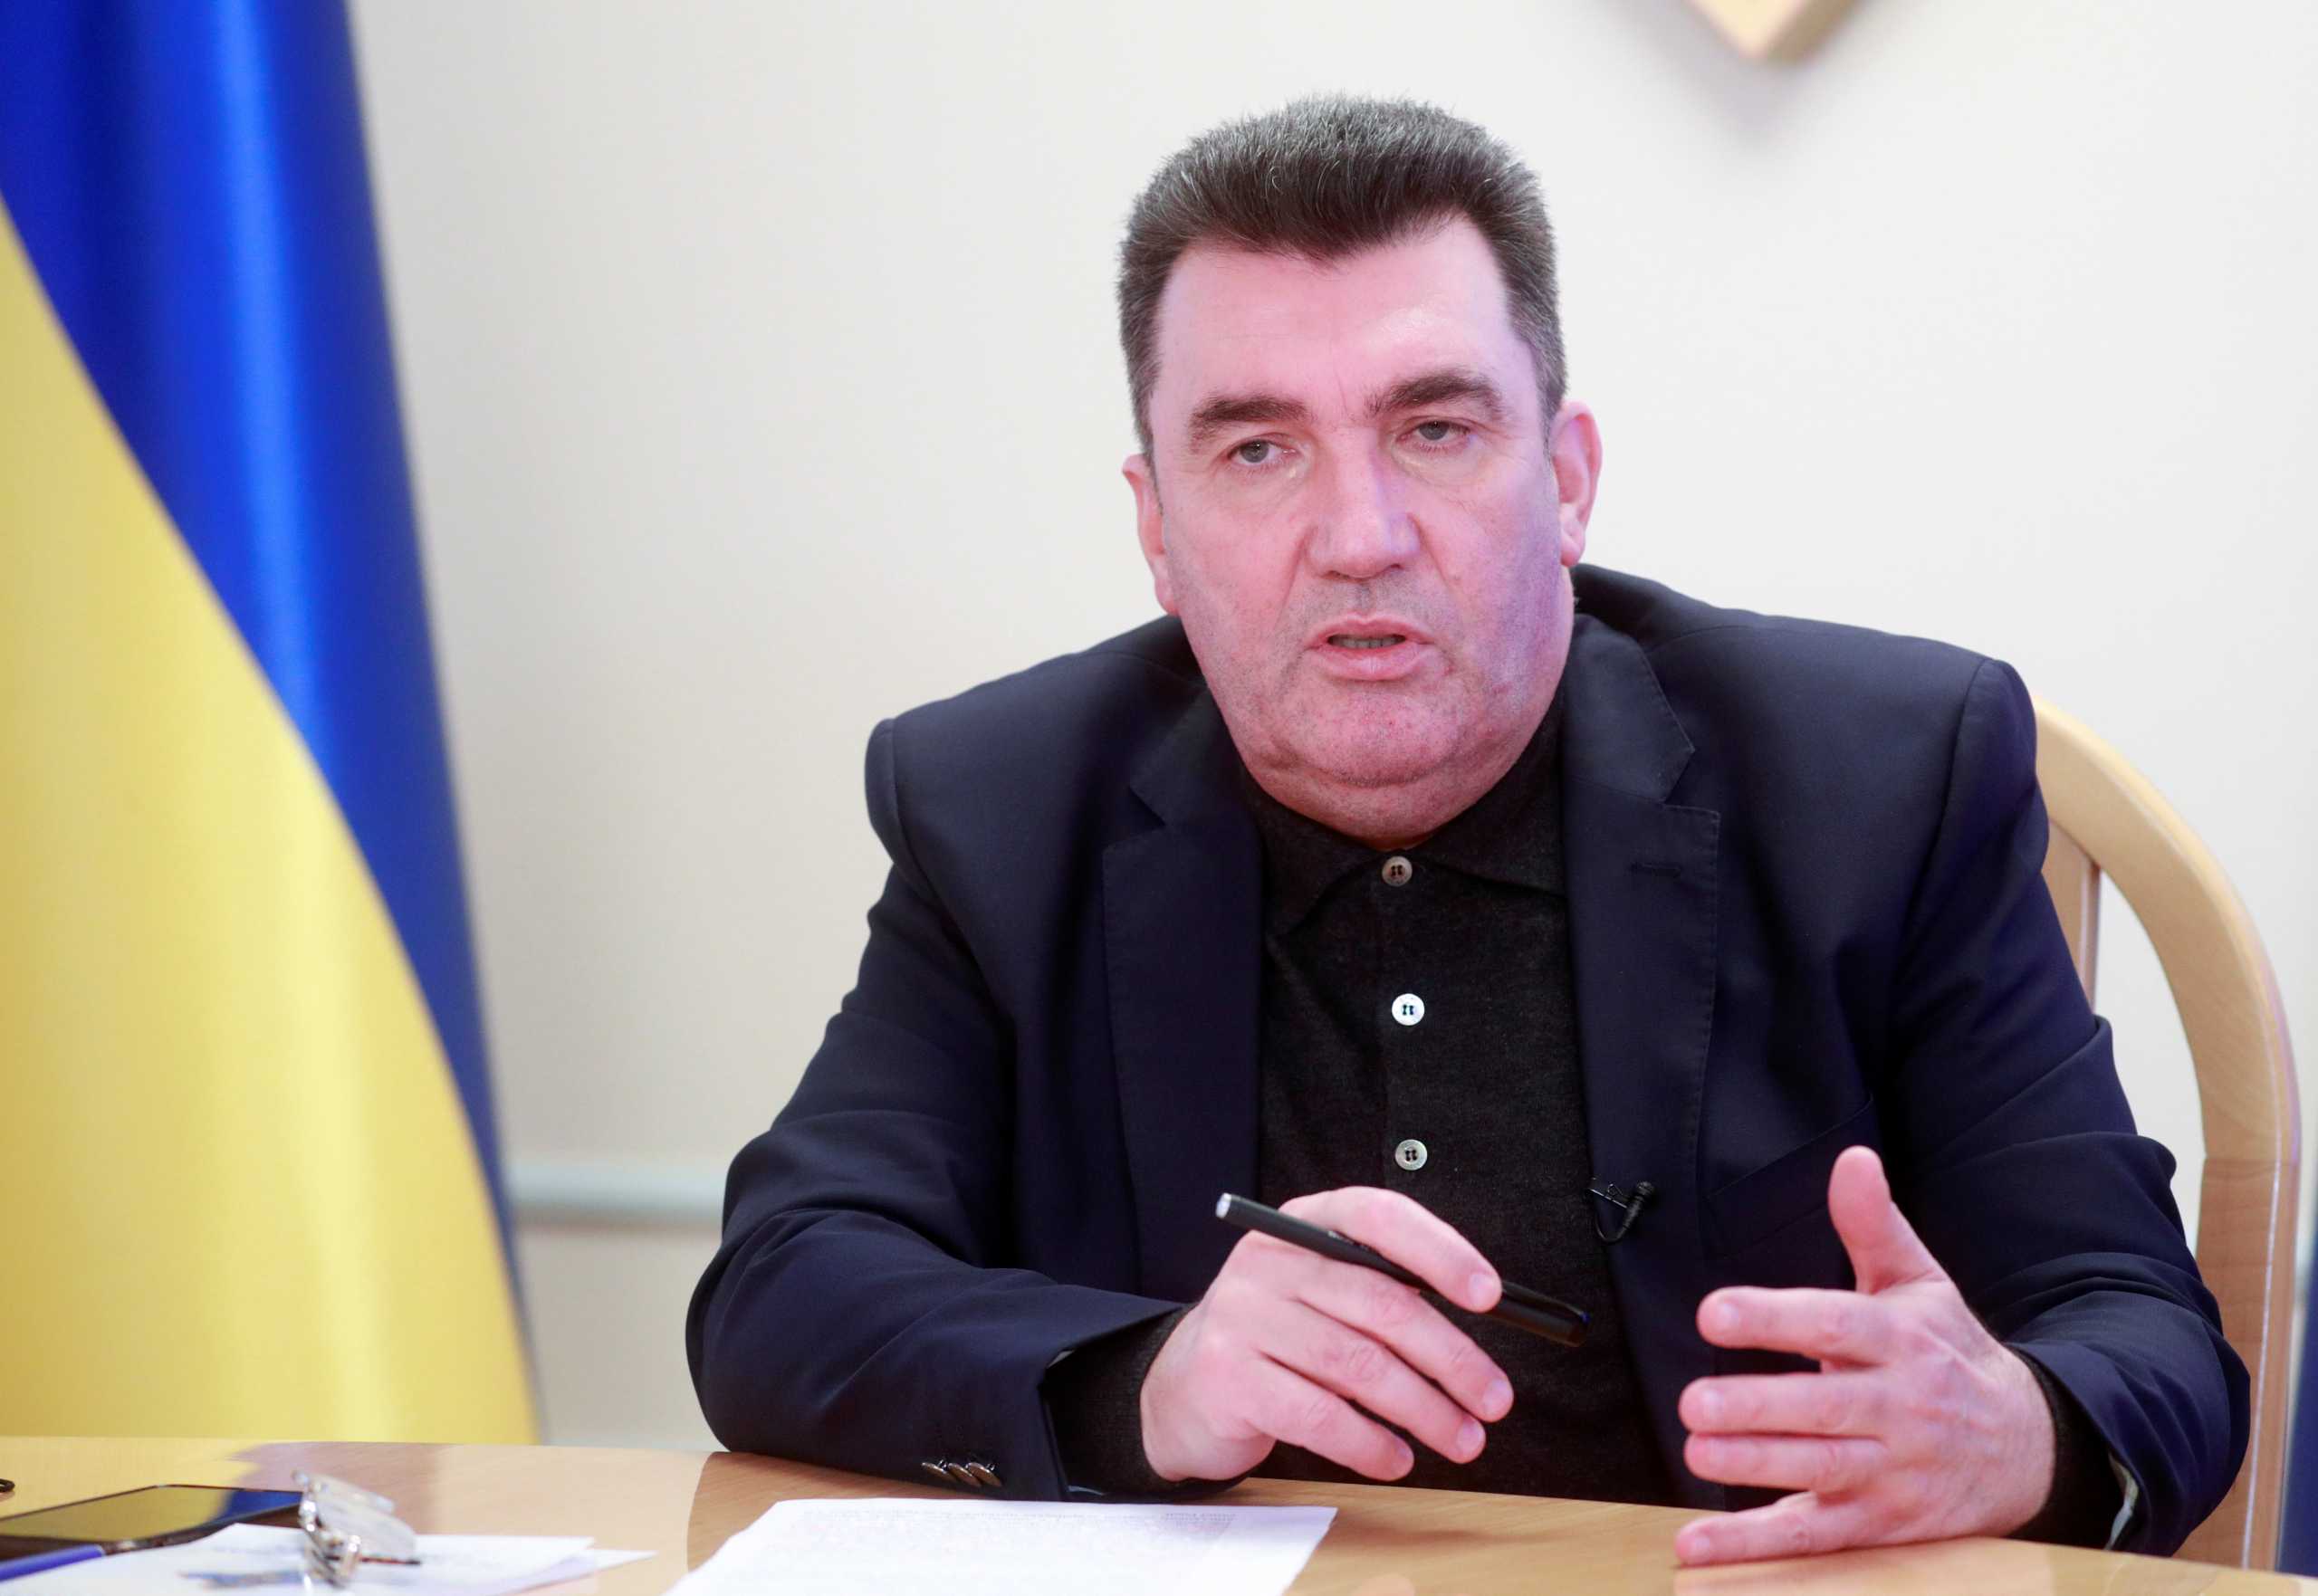 Ουκρανός αξιωματούχος: Η Μόσχα επινοεί ξένους εχθρούς για να αποκρύψει τα εσωτερικά προβλήματά της